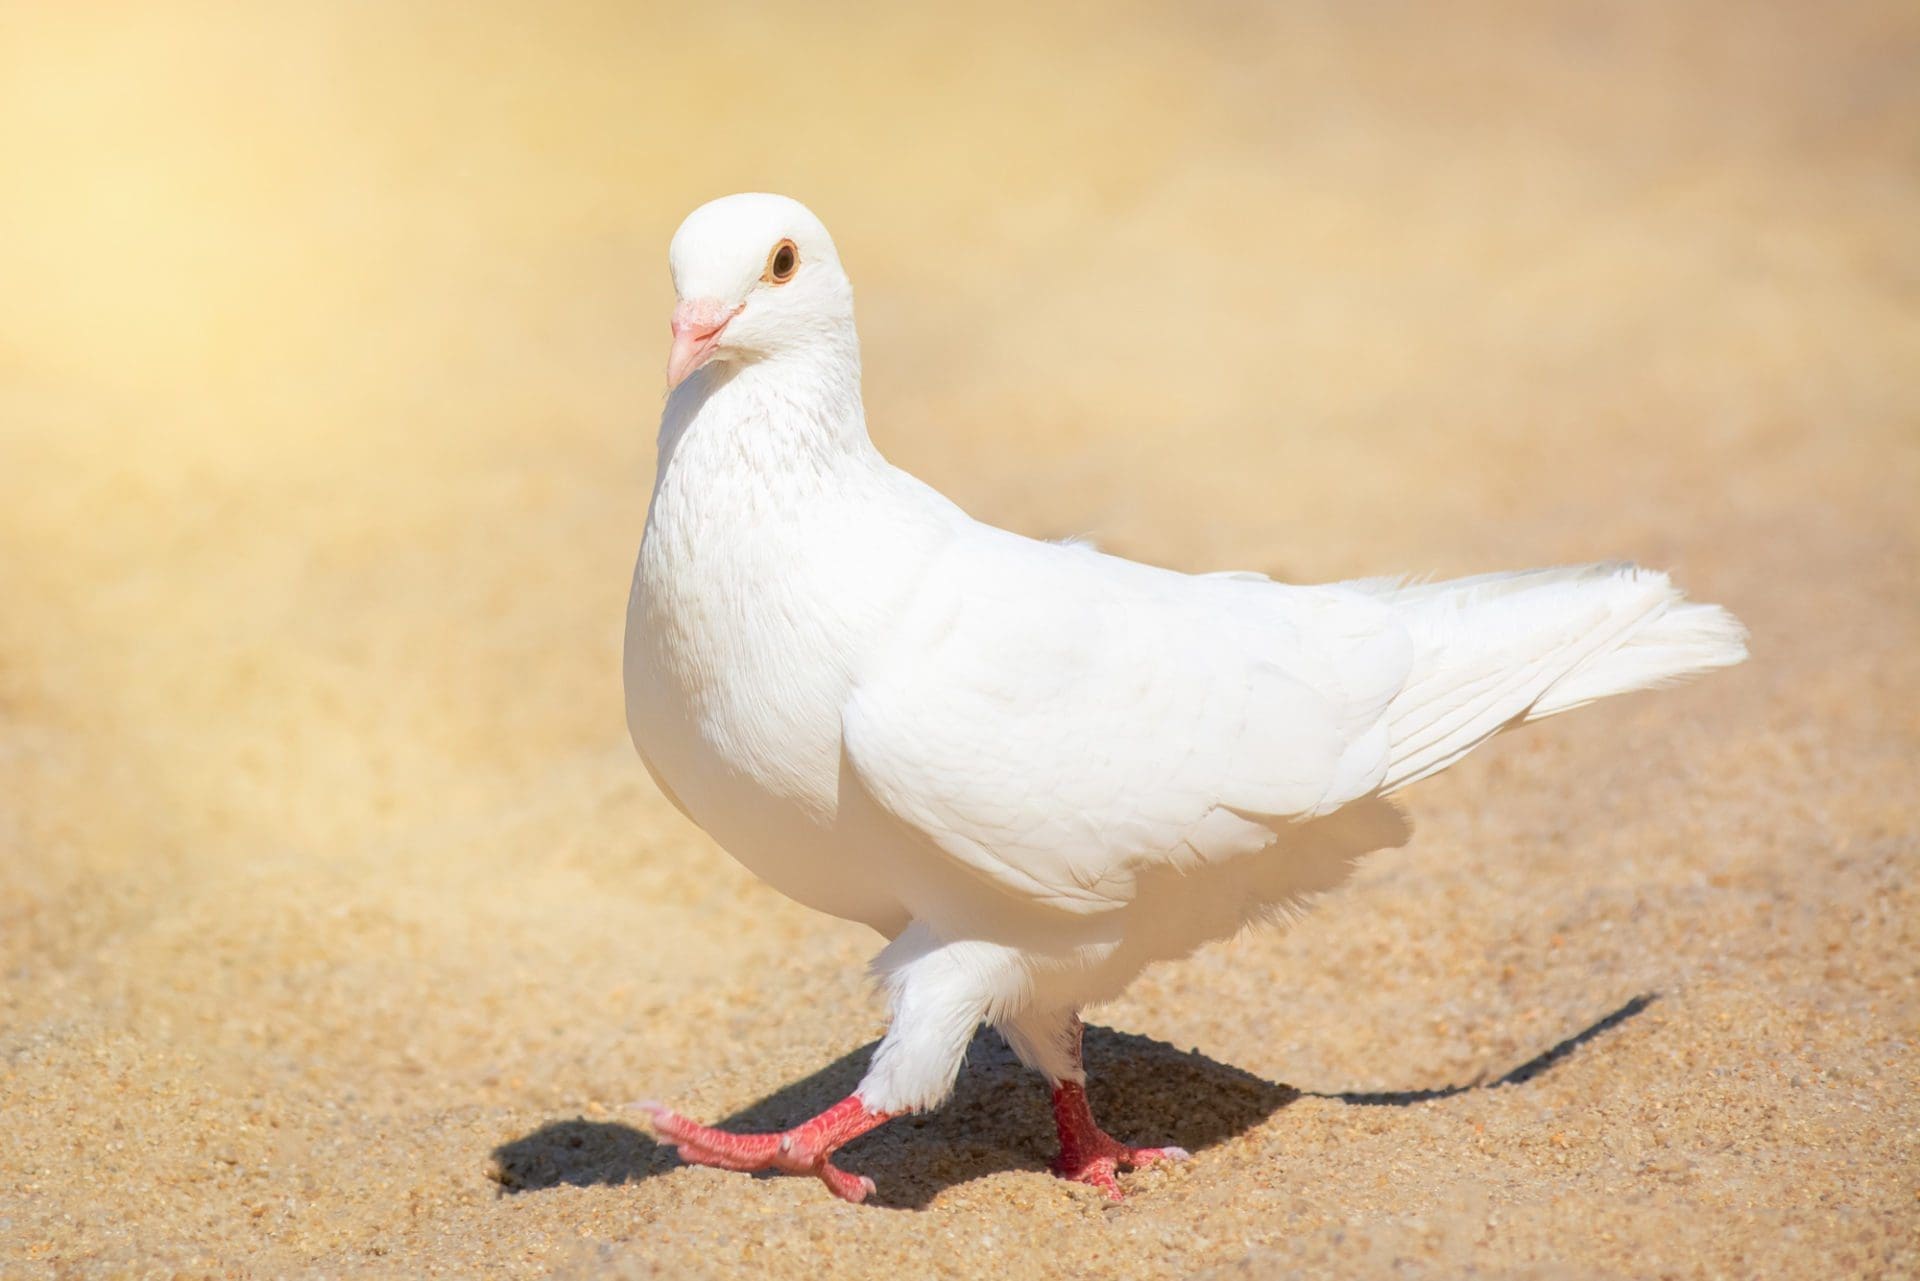 Organiser un lâcher de colombes à un mariage : des infos utiles pour vous